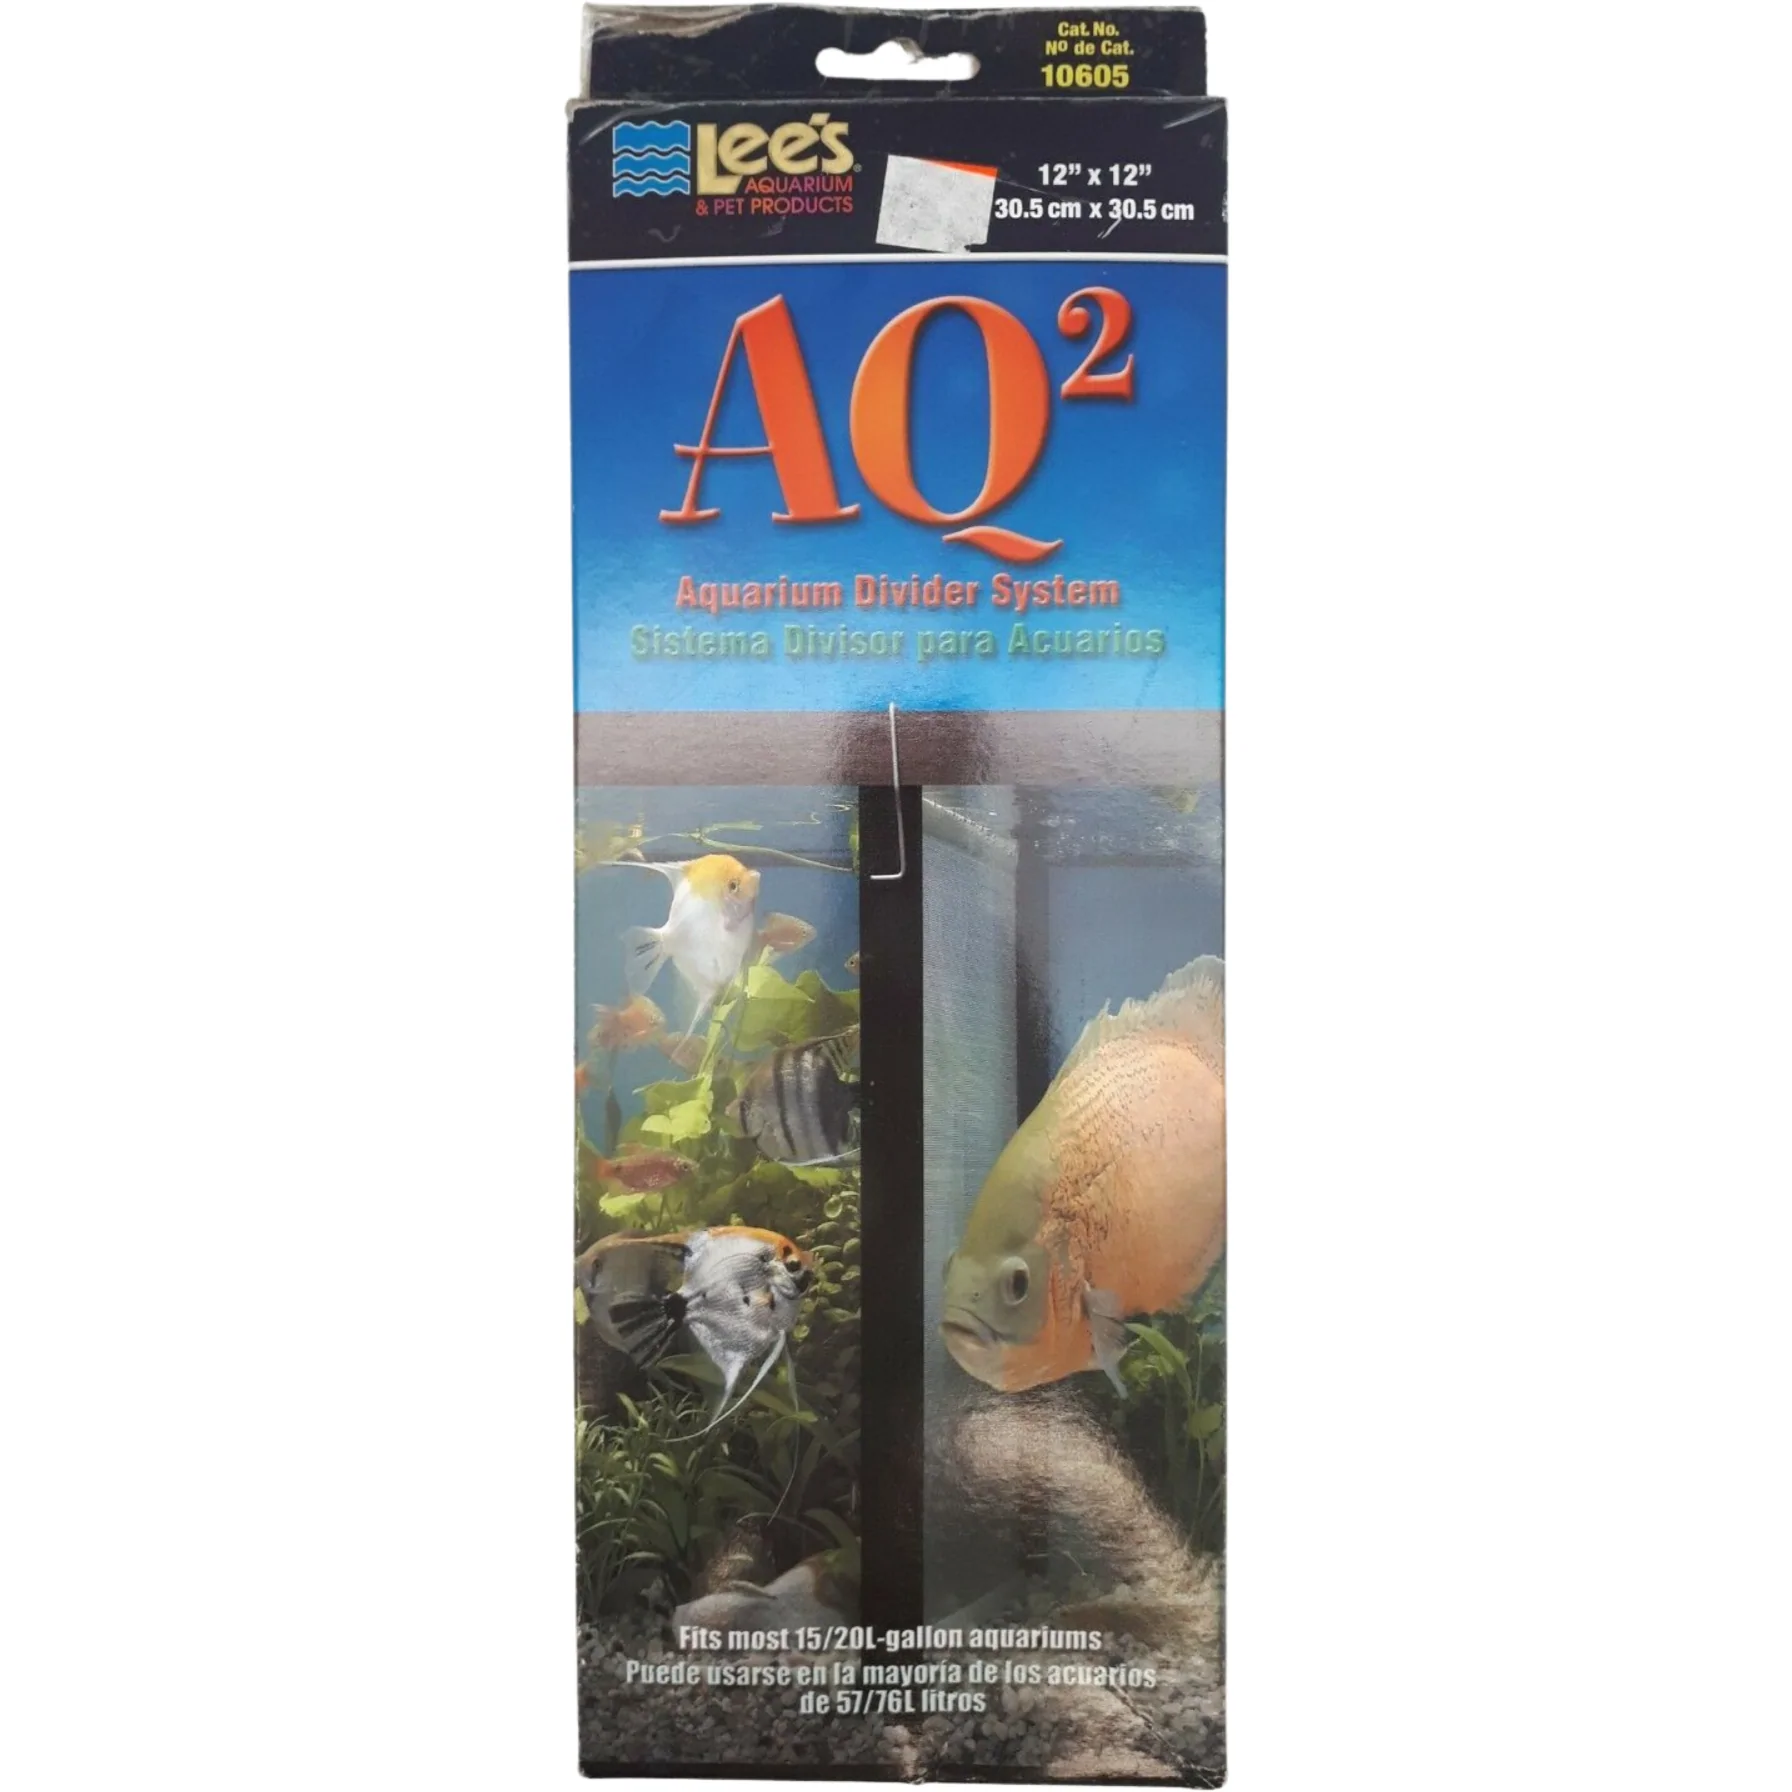 Lee's AQ2 Aquarium Divider System / Fits Most 15-20H Gallon Aquariums / 12" x 12" **DEALS**